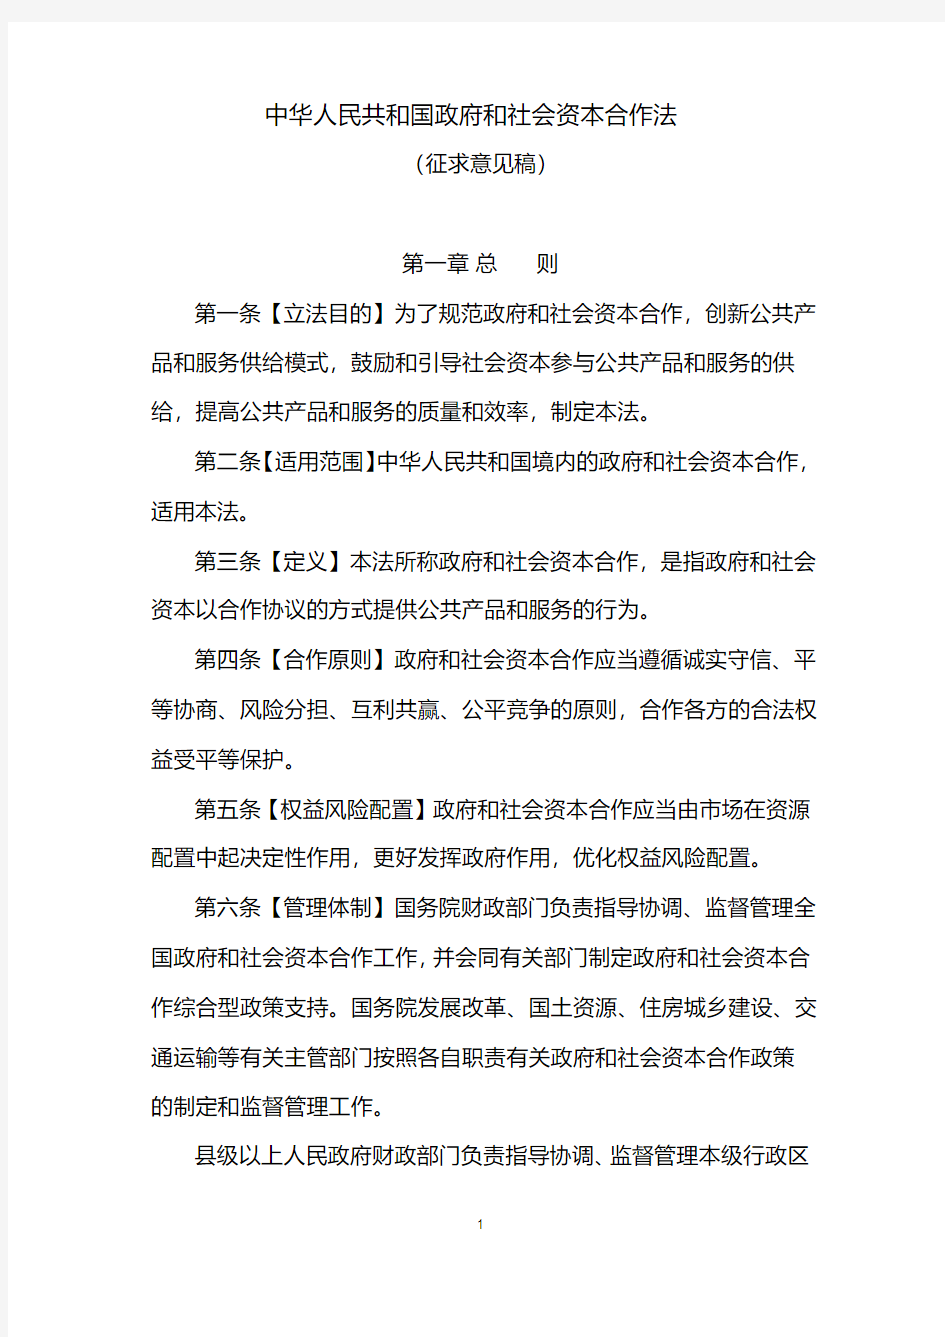 中华人民共和国政府和社会资本合作法(征求意见稿)